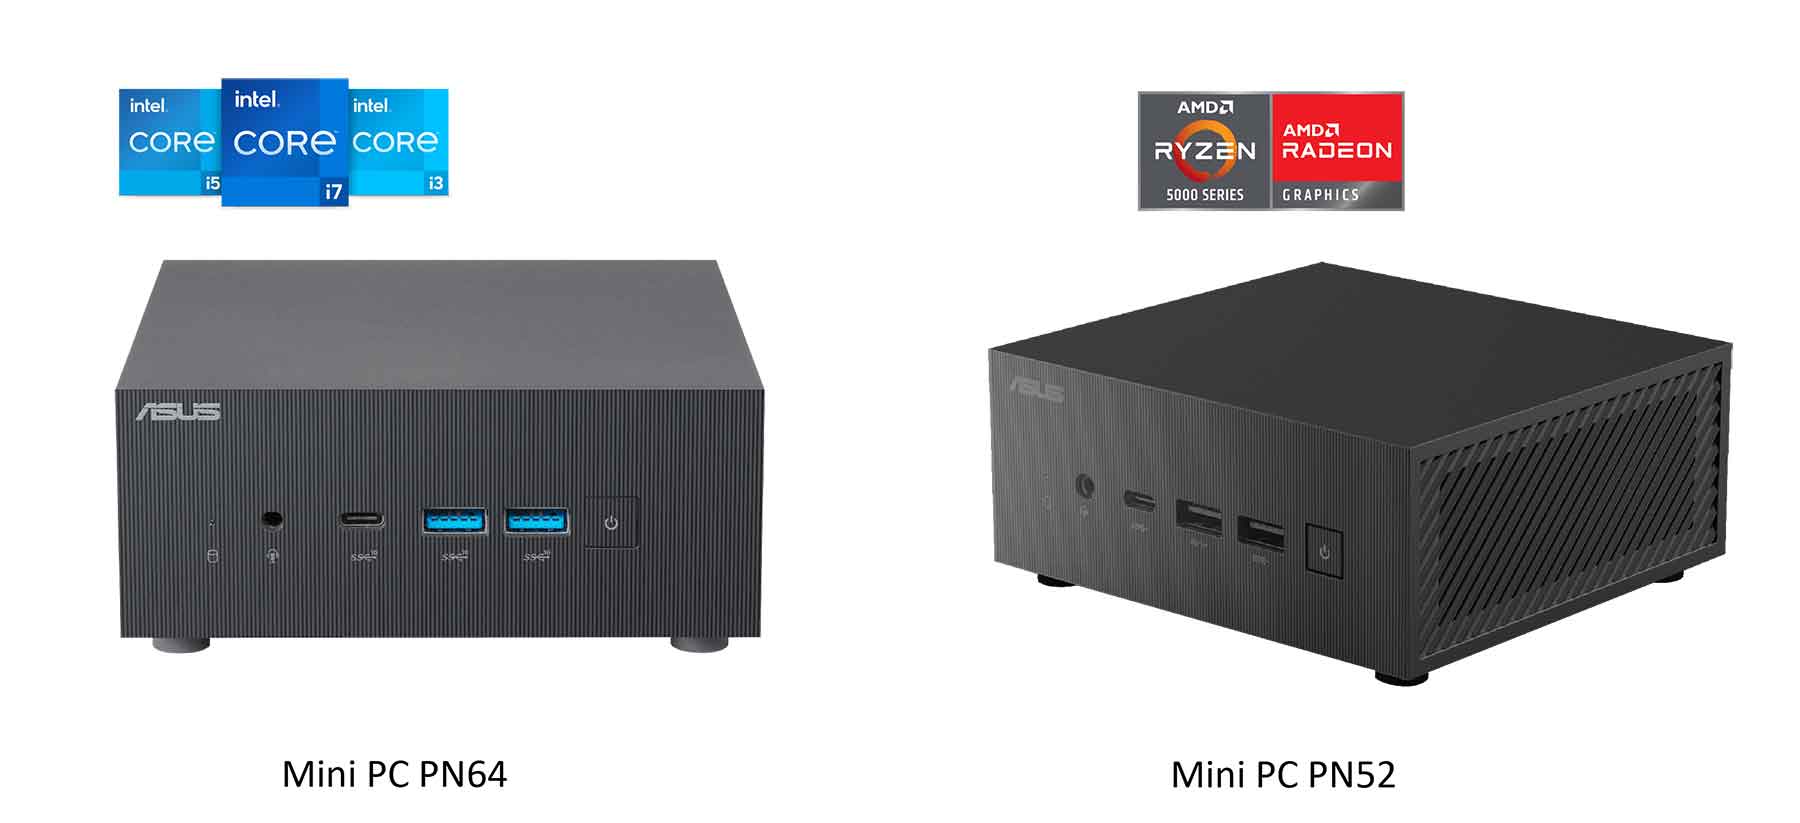 ASUS ha anunciado los Mini PC PN64 y PN52, un par de mini PC que ofrecen una sorprendente combinación de rendimiento